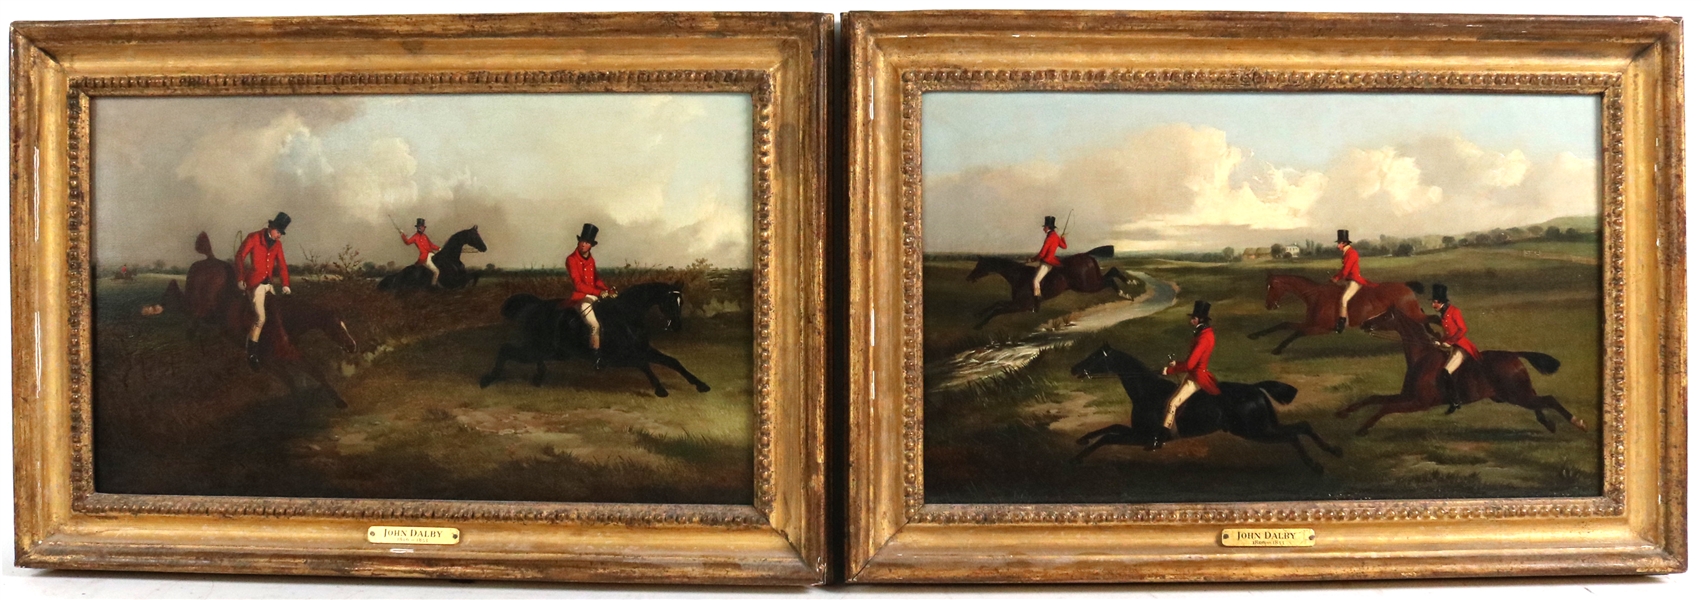 Pair of John Dalby Paintings